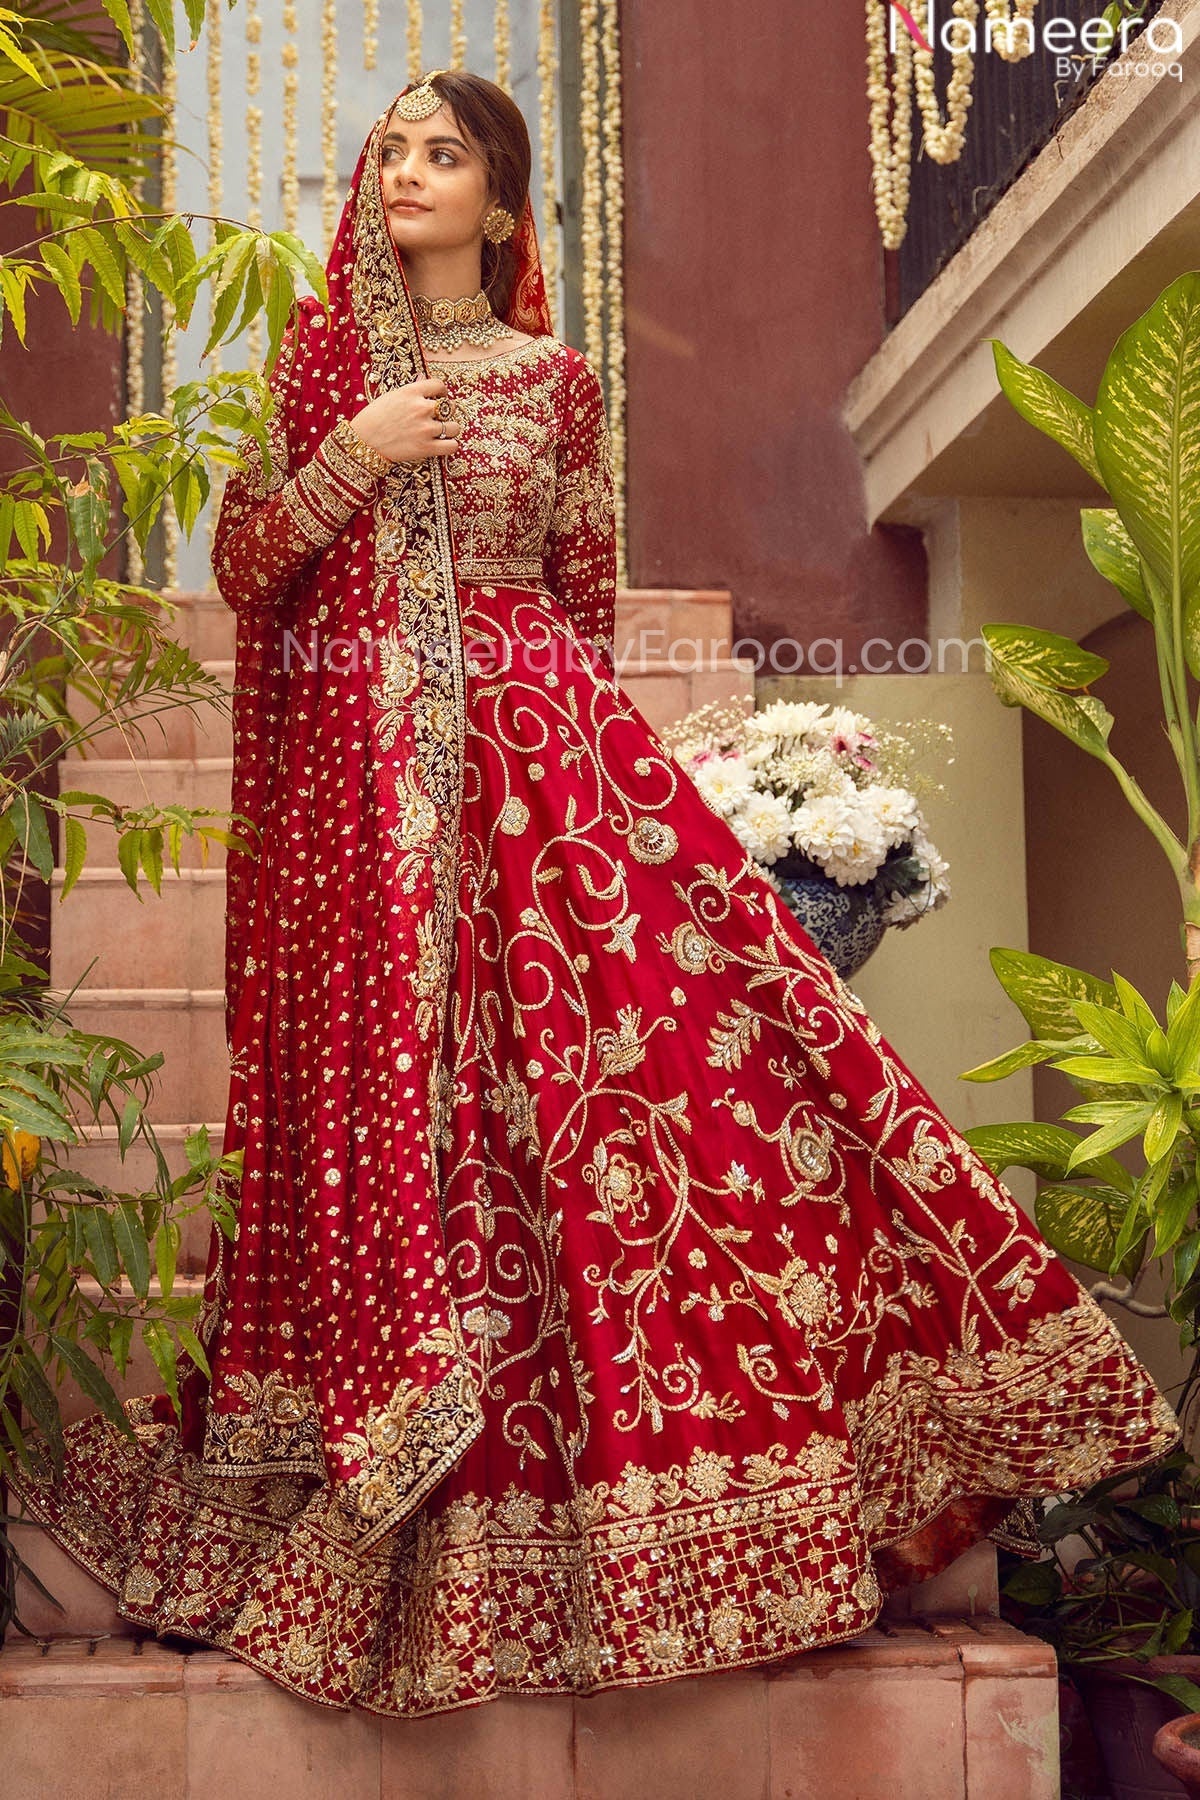 Pretty Red Bridal Dress Pakistani Designer Attire Online 2021 Nameera By Farooq 3405